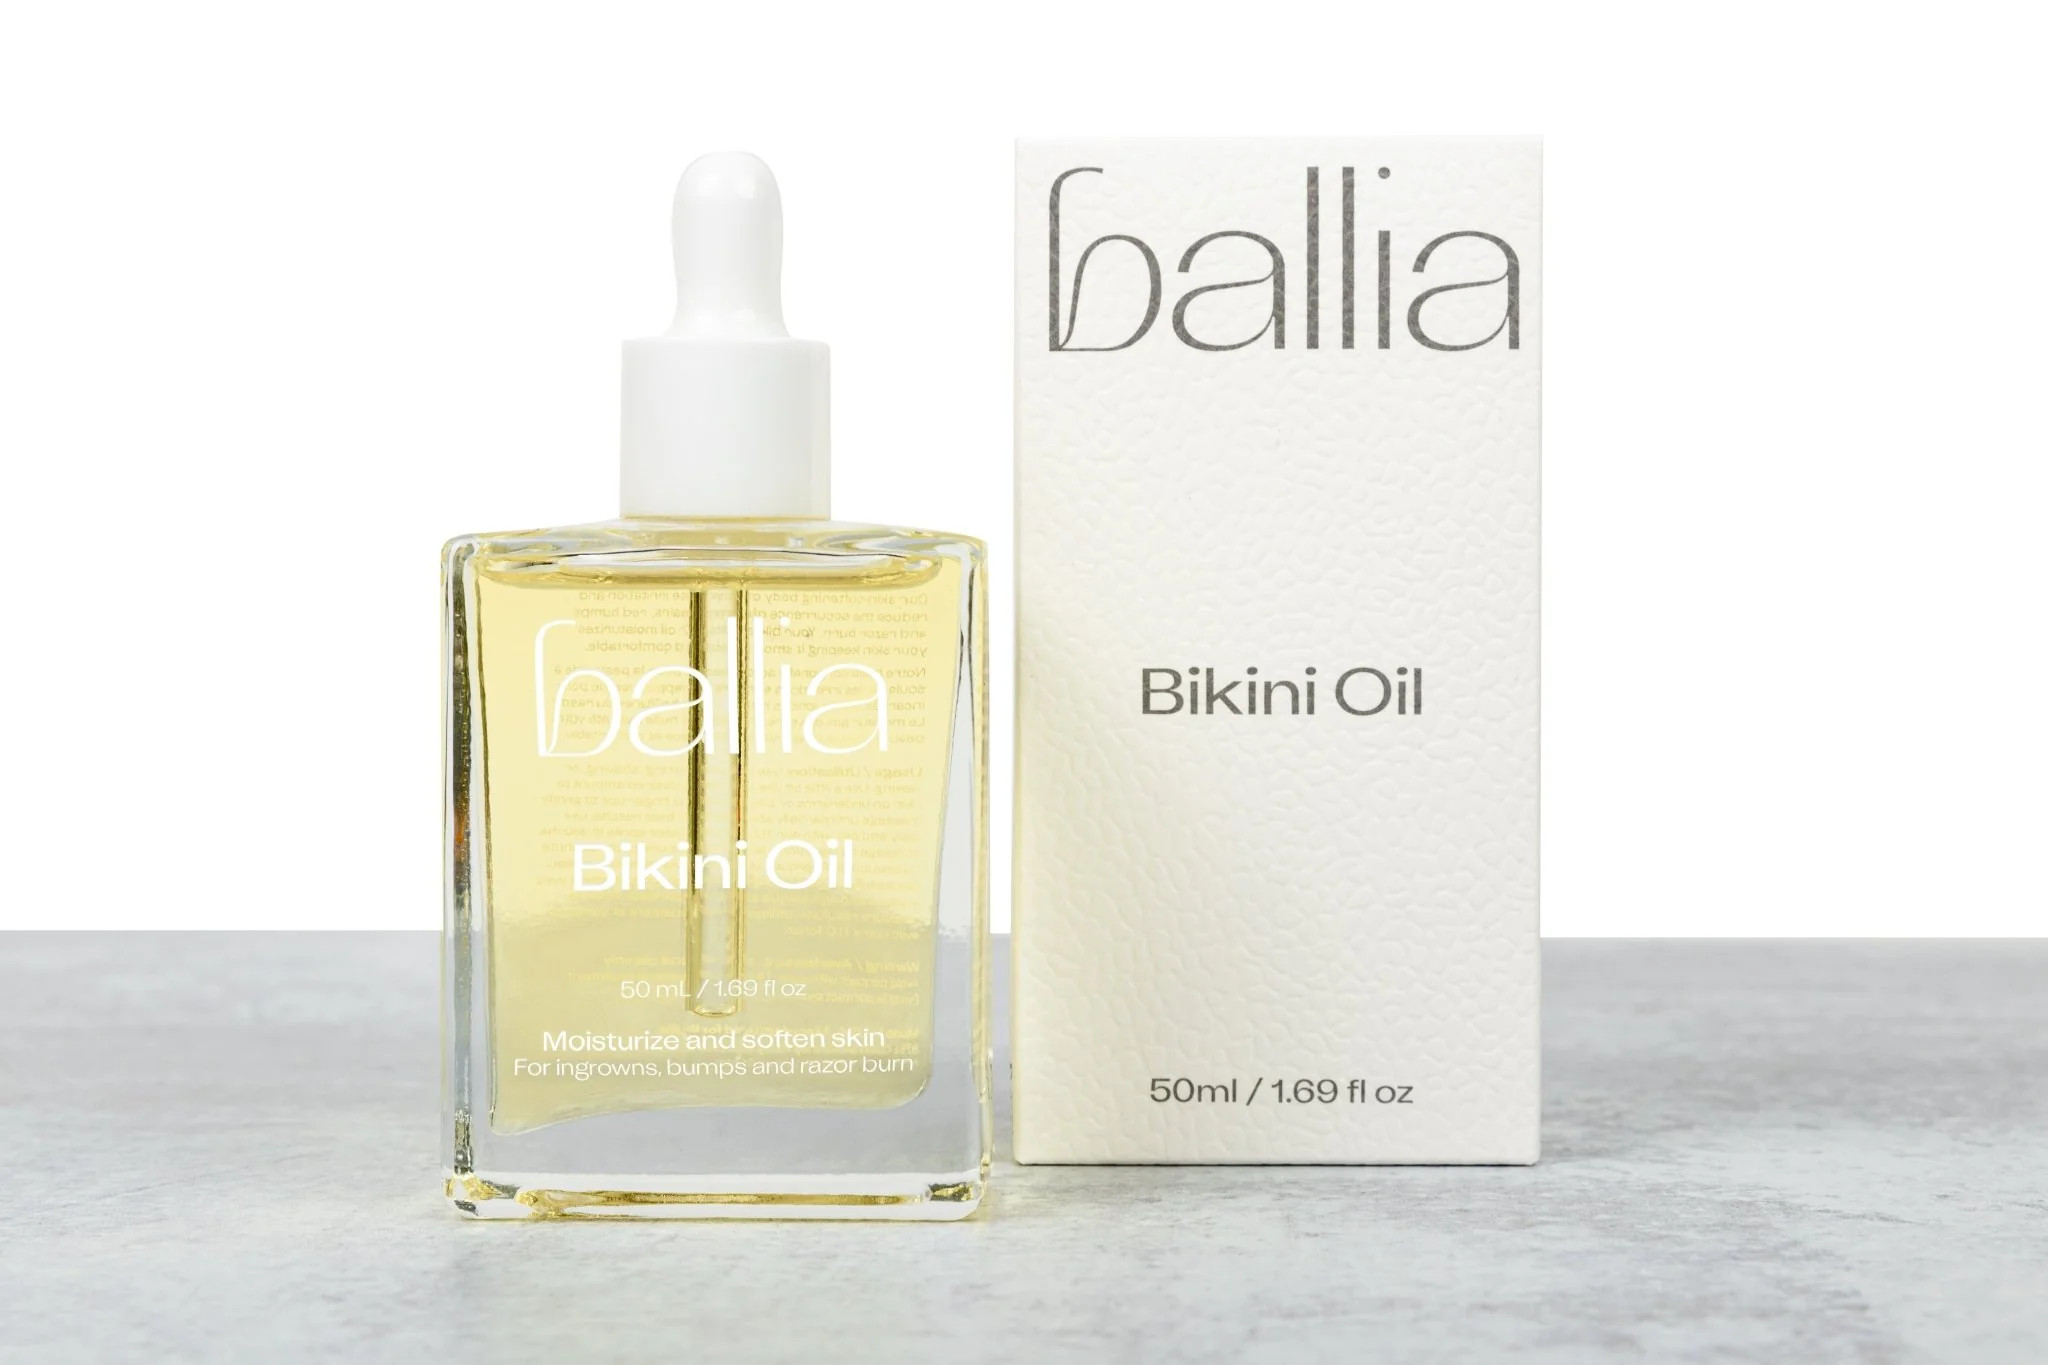 Bikini Oil | Ballia